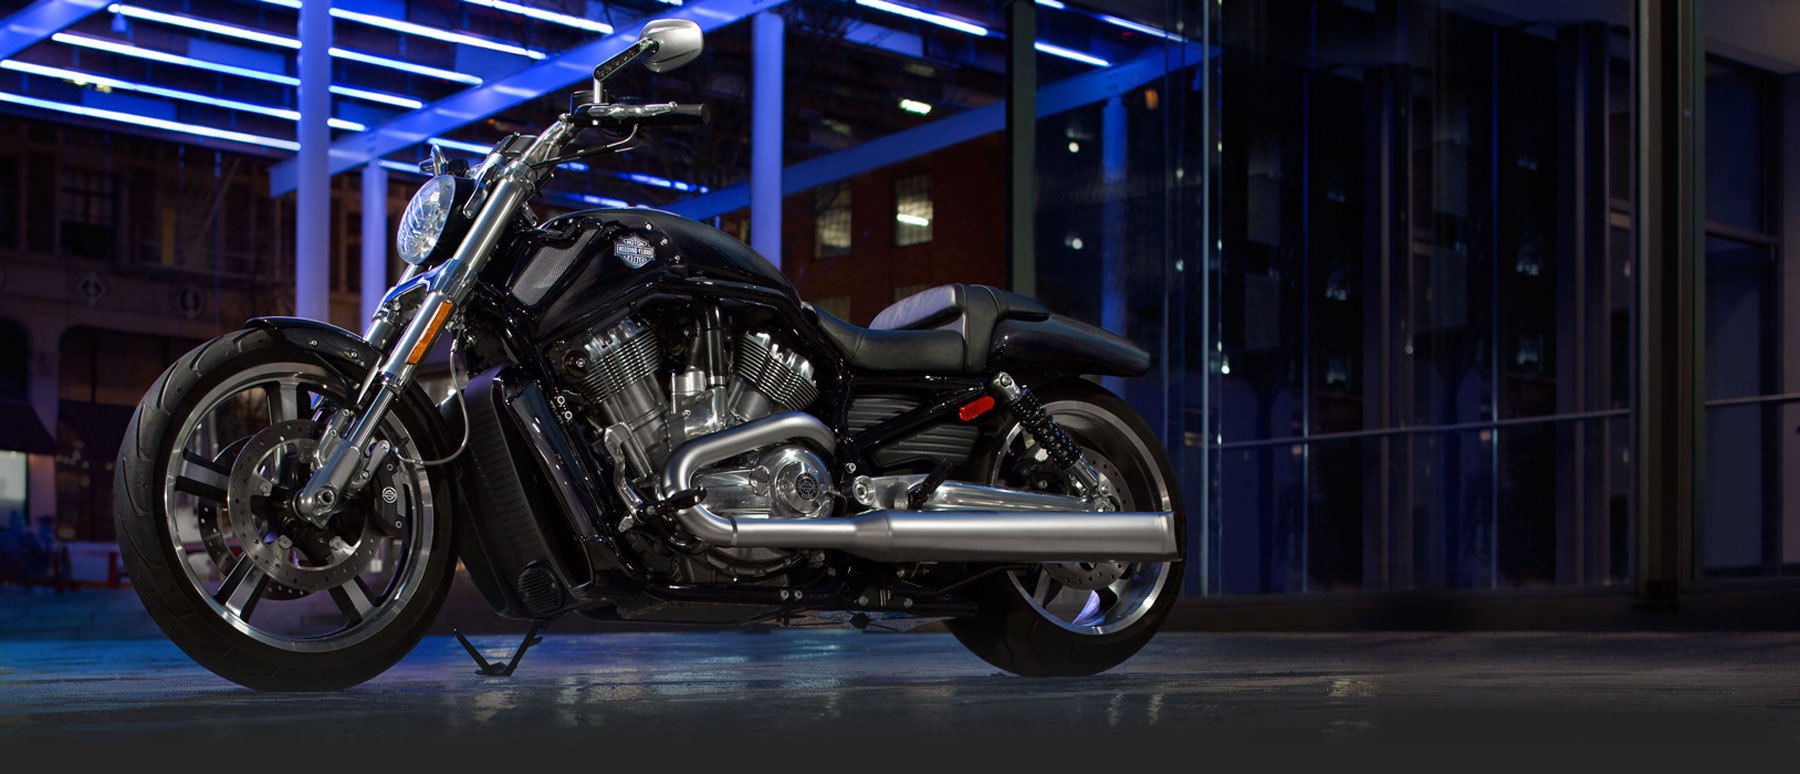 Harley-Davidson V-Rod on showroom floor